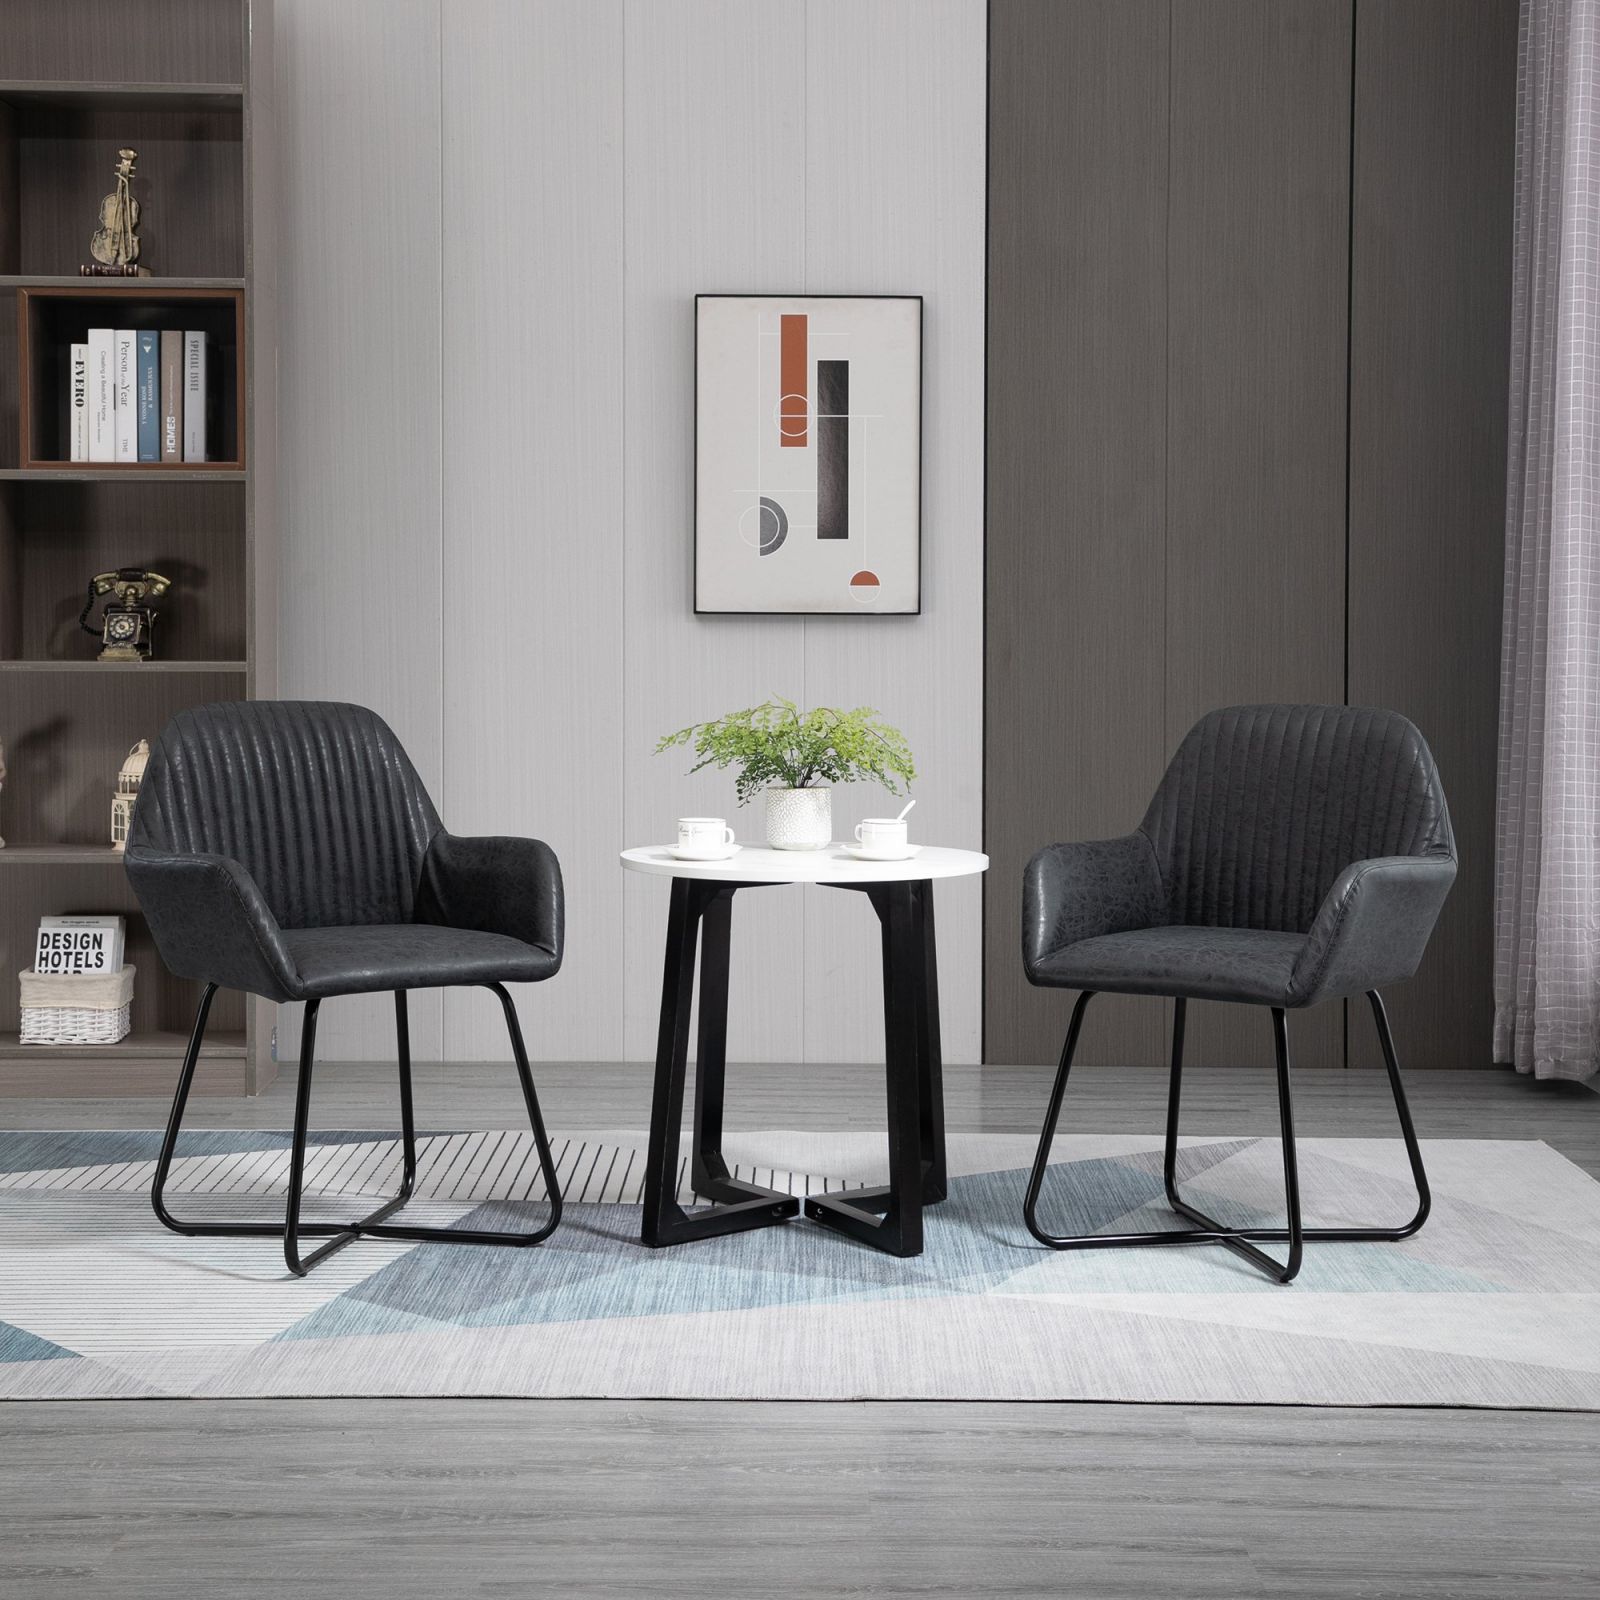 Sedie moderne, per cucina e soggiorno